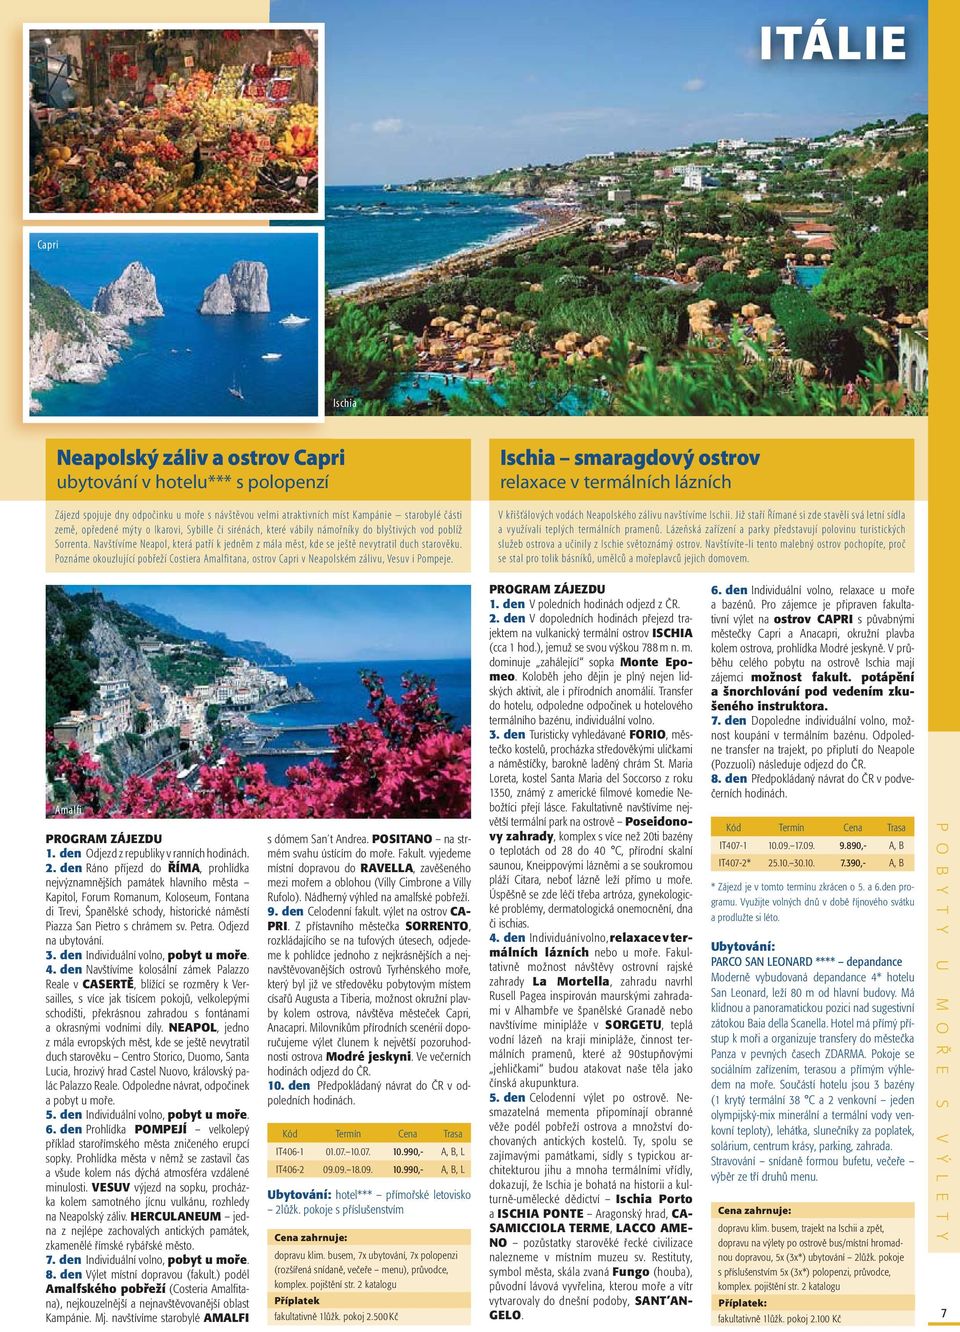 Poznáme okouzlující pobřeží Costiera Amalfitana, ostrov Capri v Neapolském zálivu, Vesuv i Pompeje.